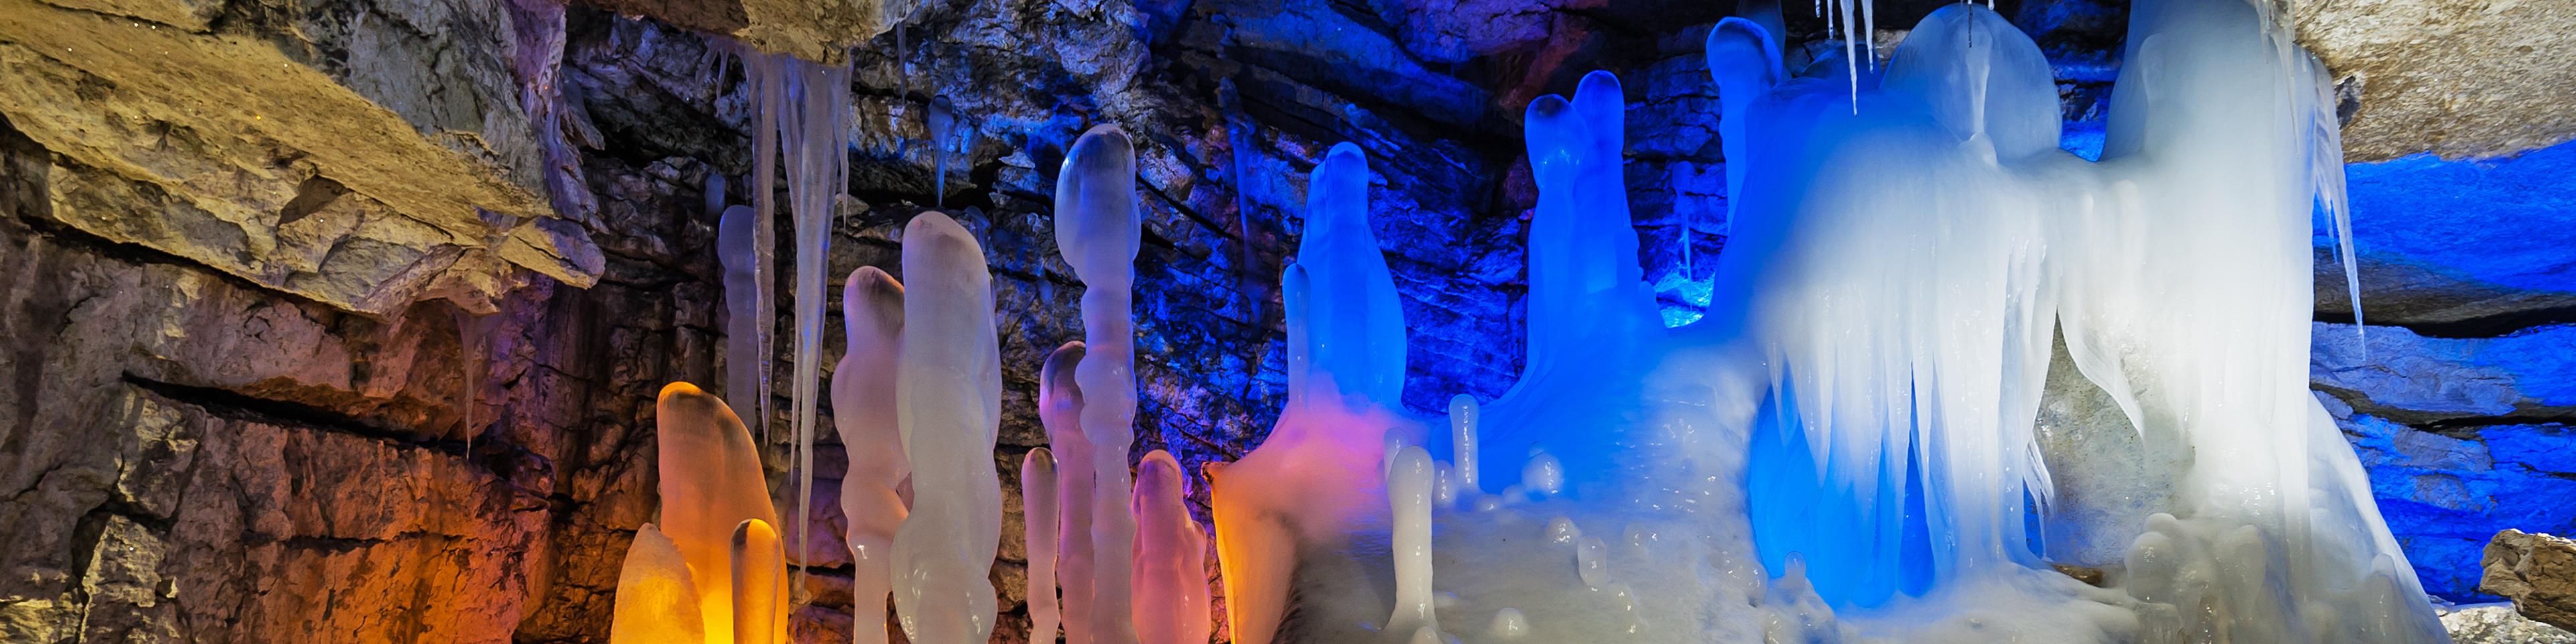 Грот Атлантида в Кунгурской ледяной пещере